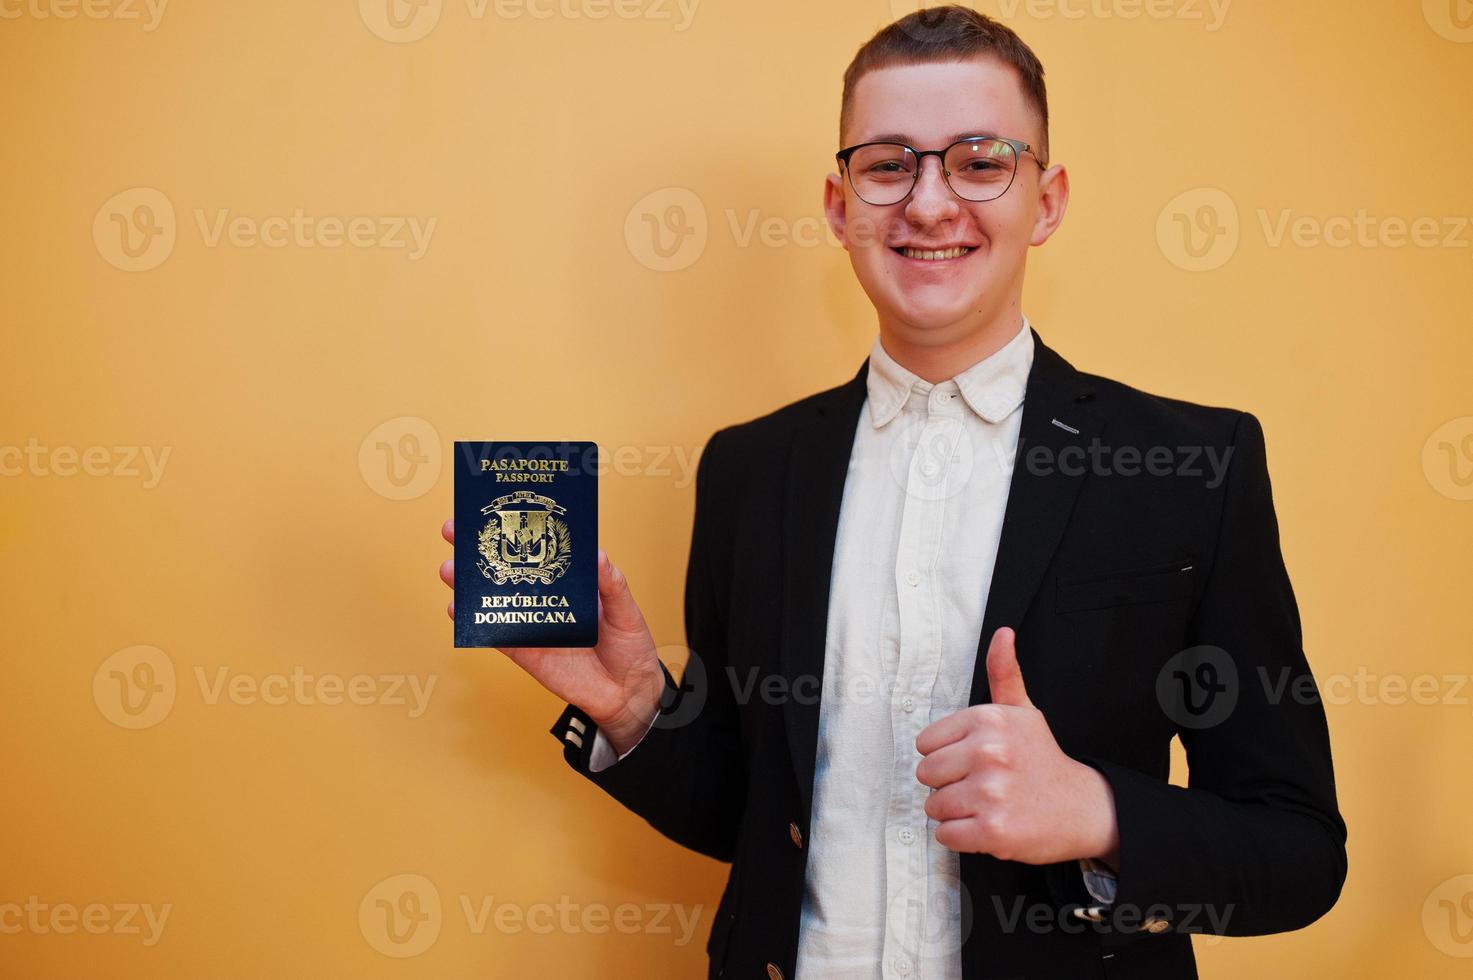 jong knap Mens Holding dominicaans republiek paspoort ID kaart over- geel achtergrond, gelukkig en tonen duim omhoog. reizen naar Amerika landen. foto